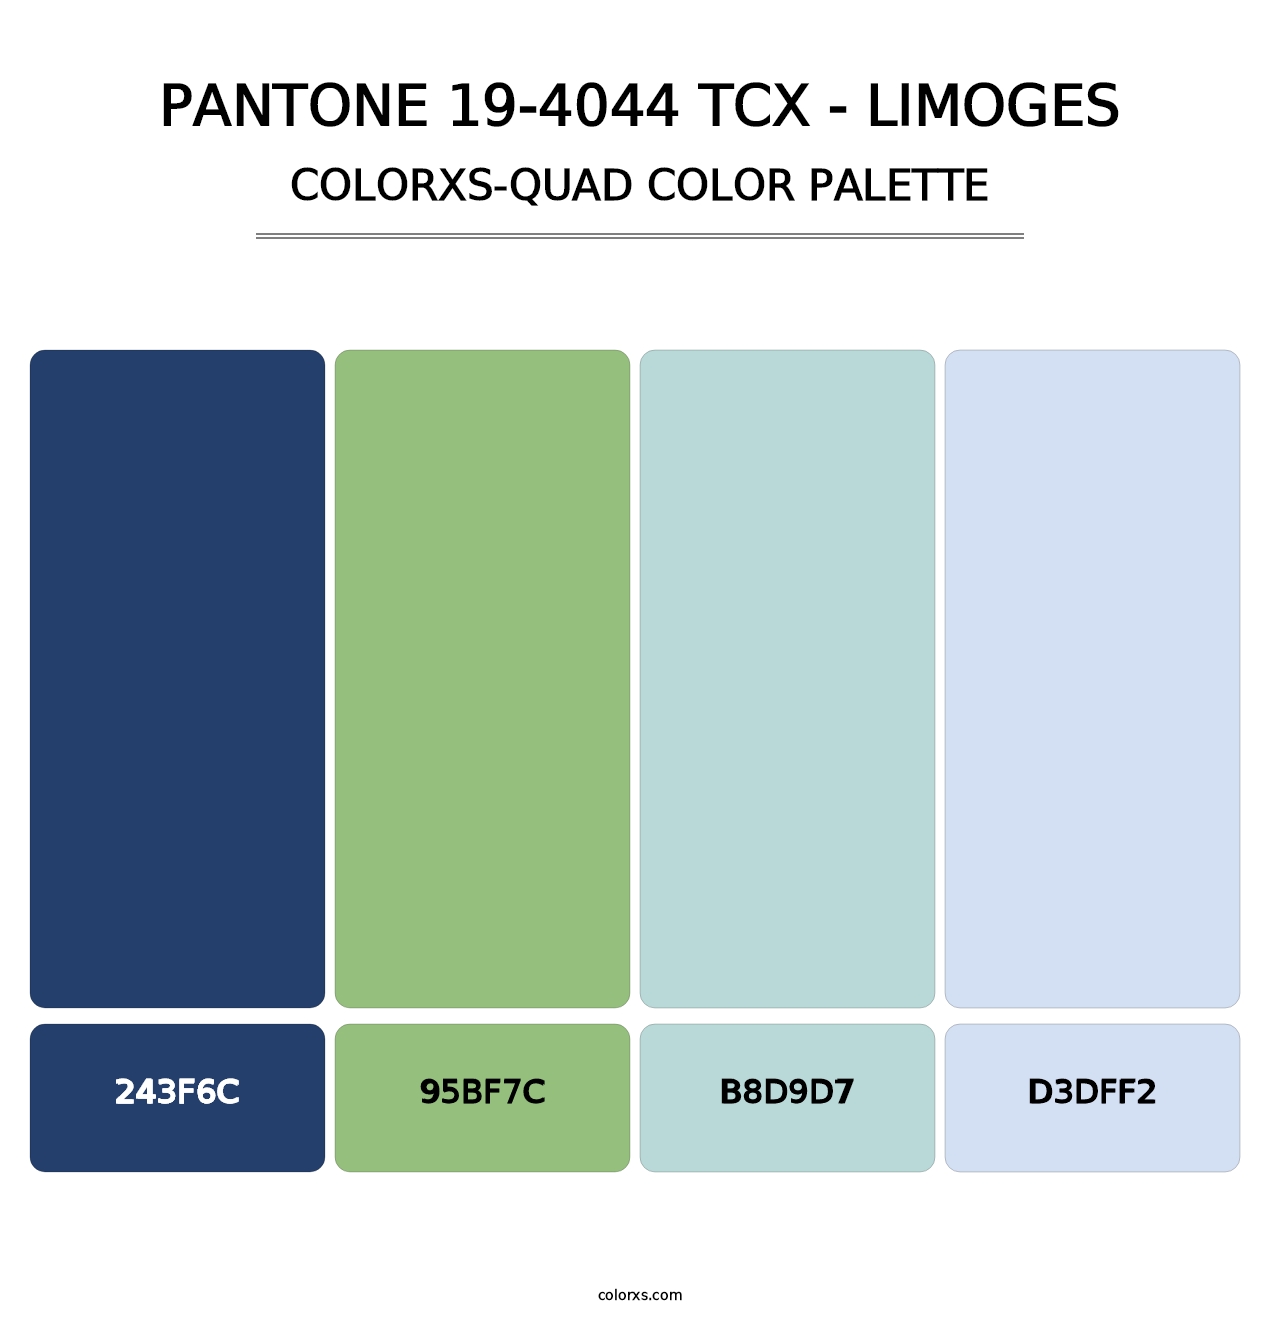 PANTONE 19-4044 TCX - Limoges - Colorxs Quad Palette